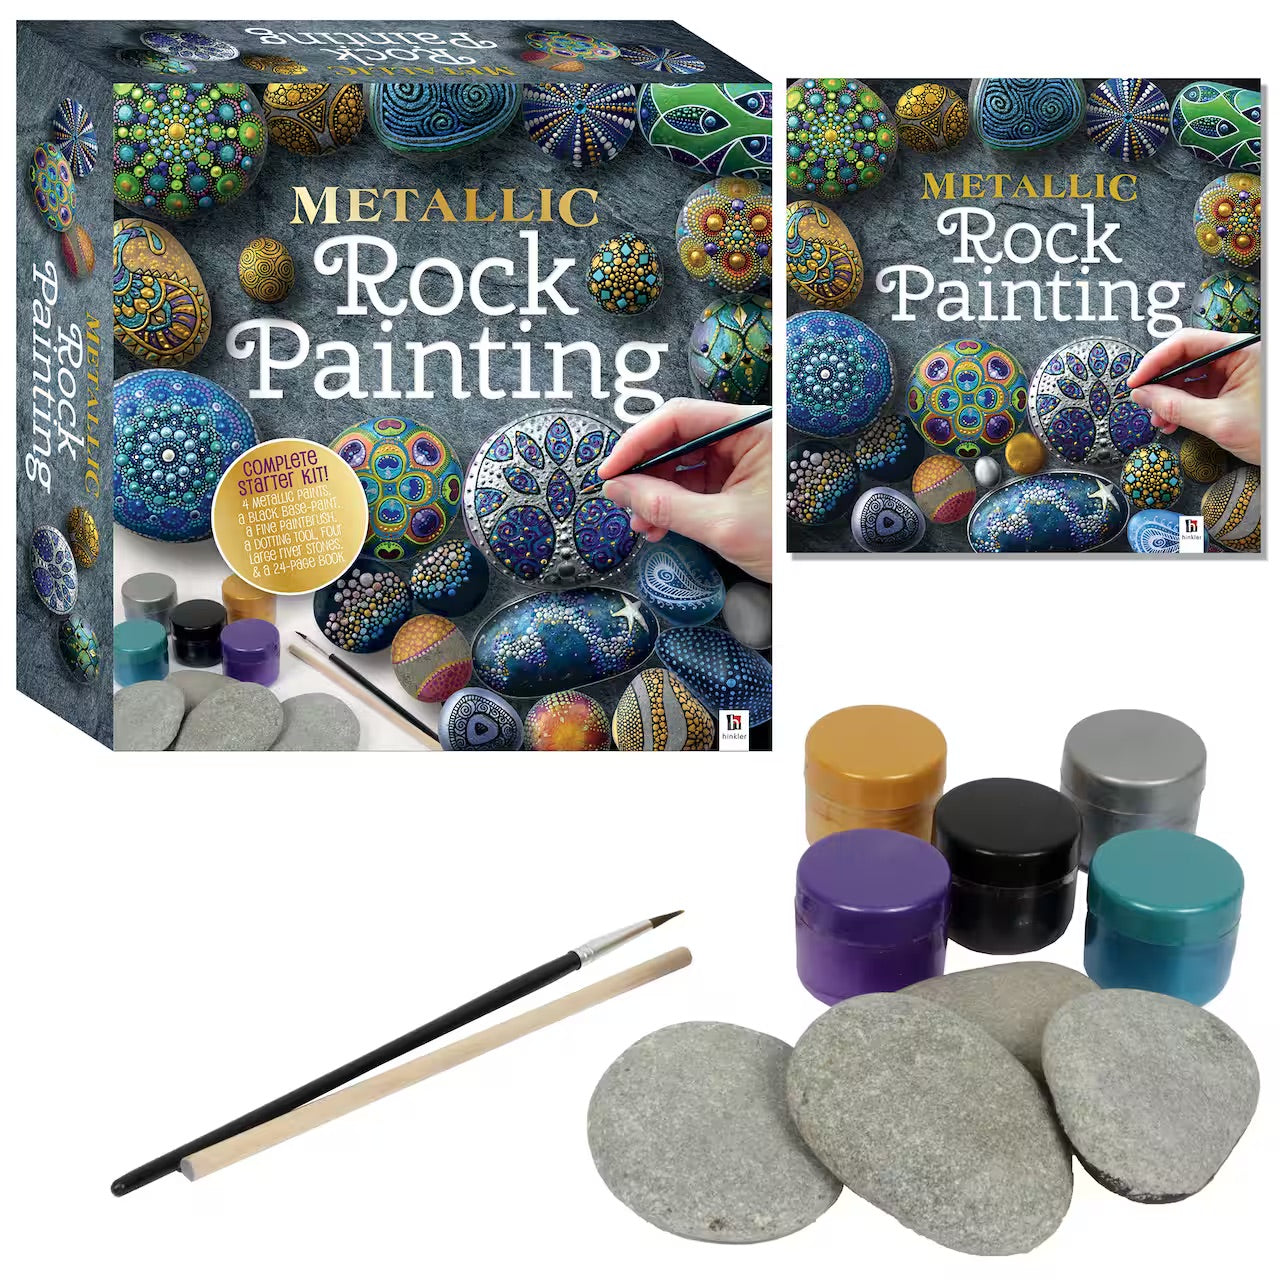 Metallic Rock Painting Kit - Rabata Cultural Center & Bookshop